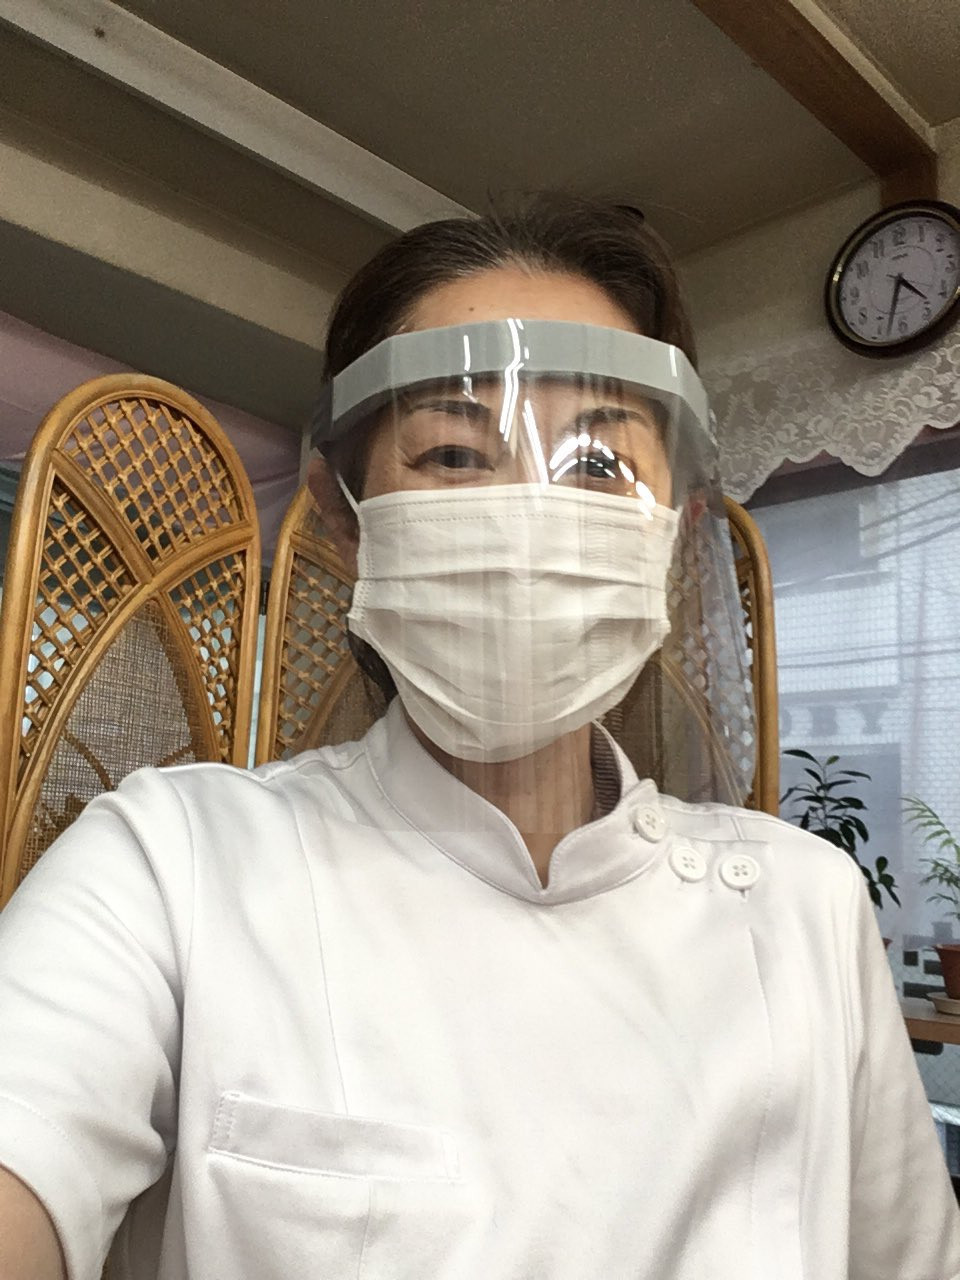 マスクとフェイスガード着用とその都度の消毒で感染予防に努める